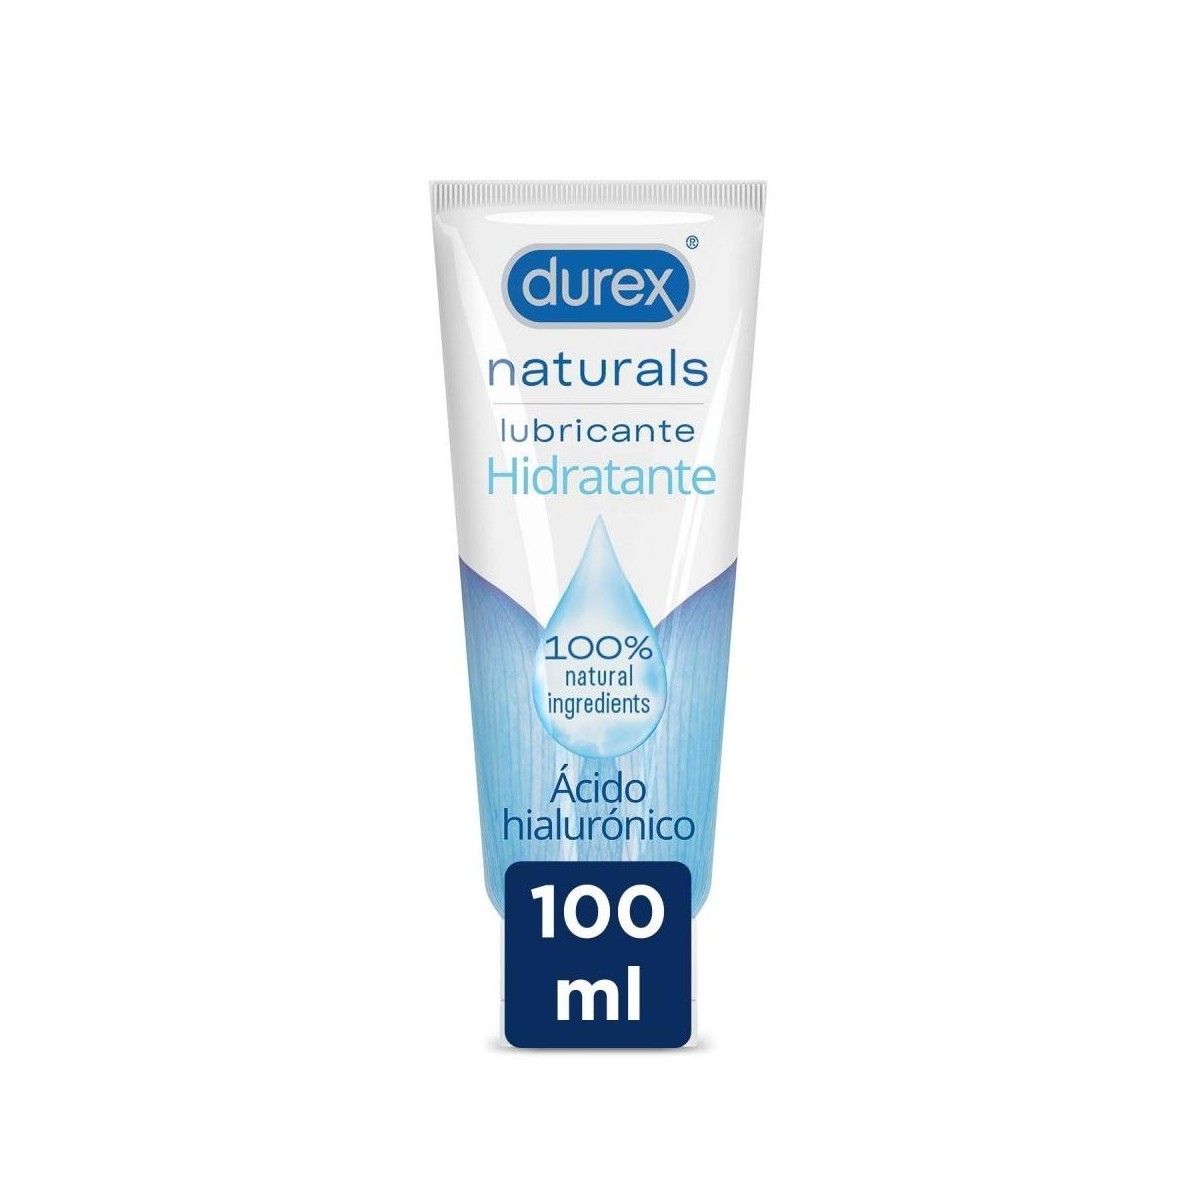 durex-lubricante-naturals-hidratante-100ml